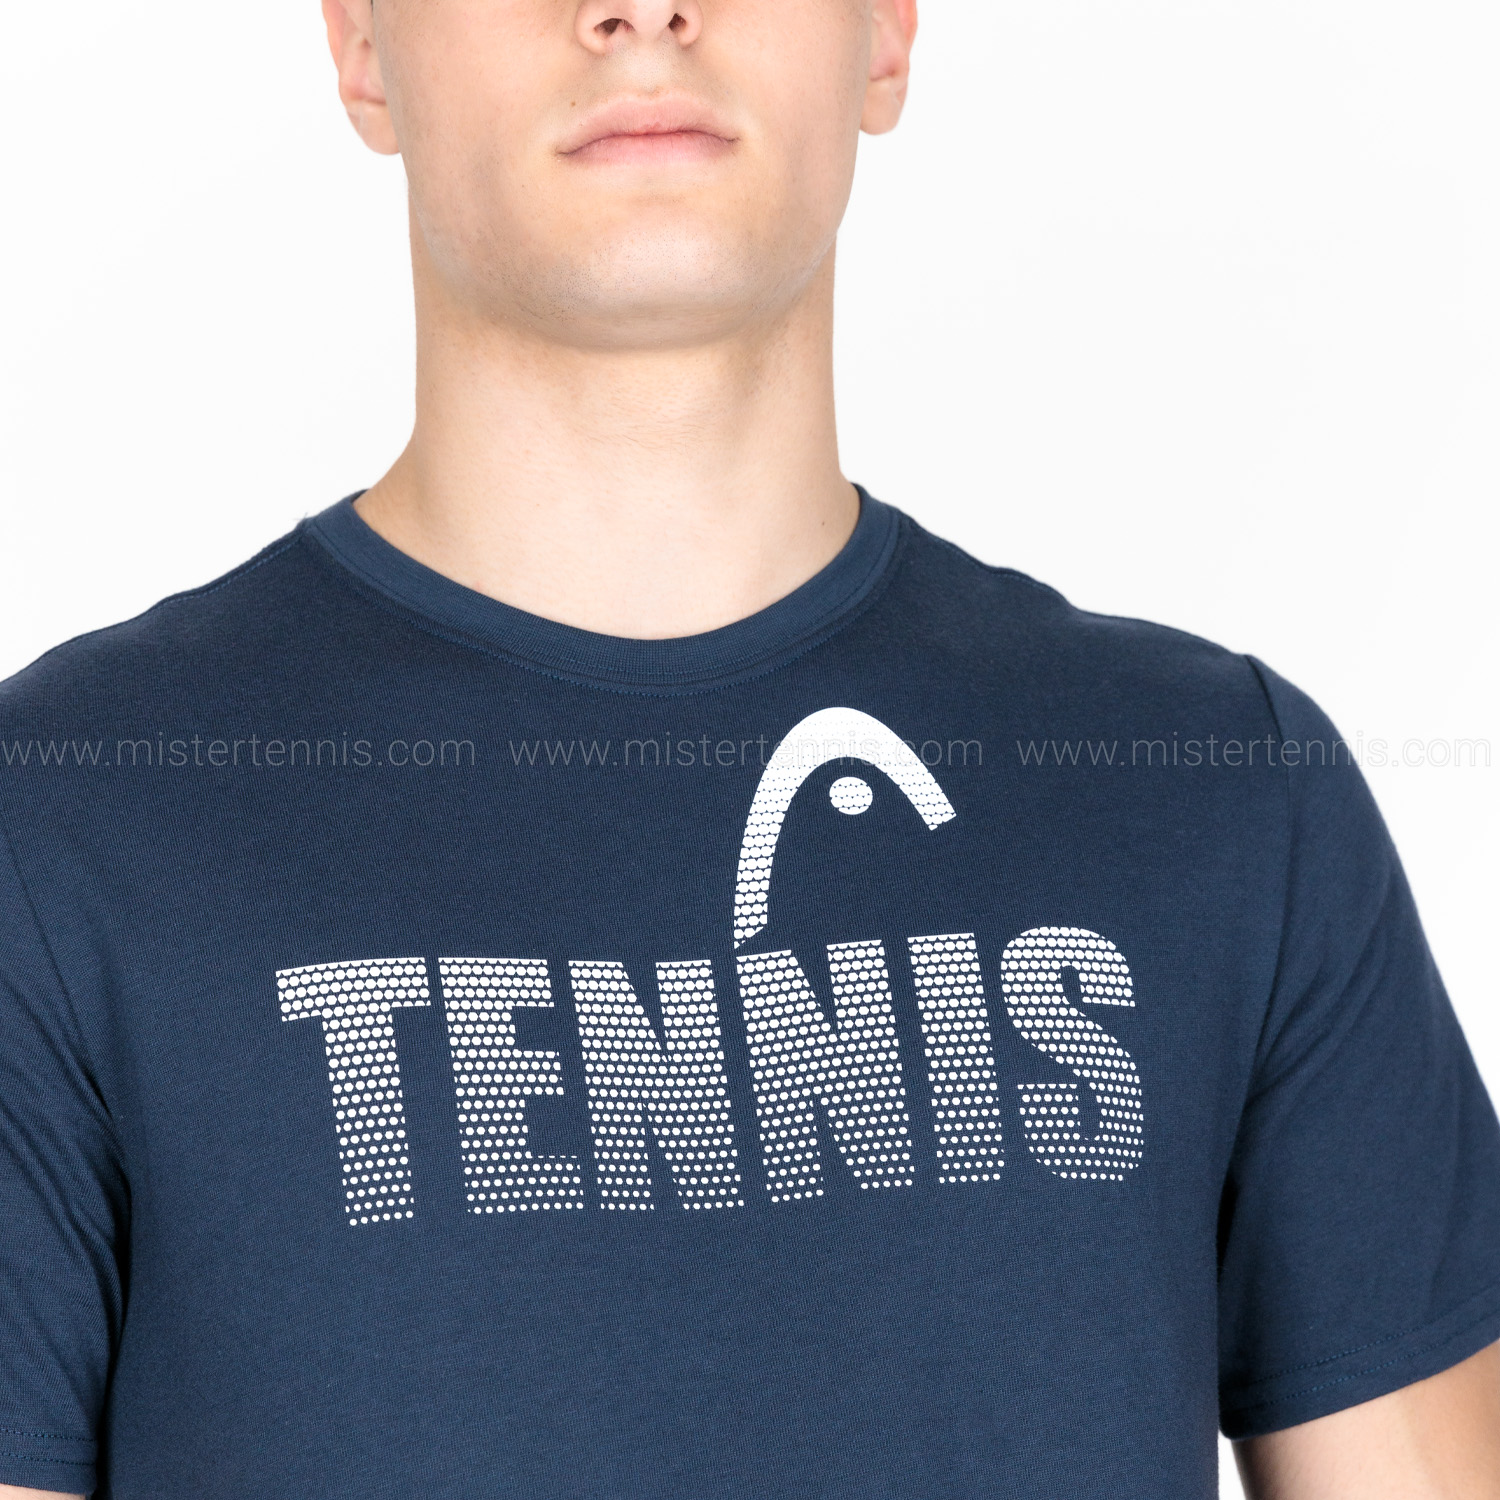 Head Club Colin Mens Tennis T-Shirt